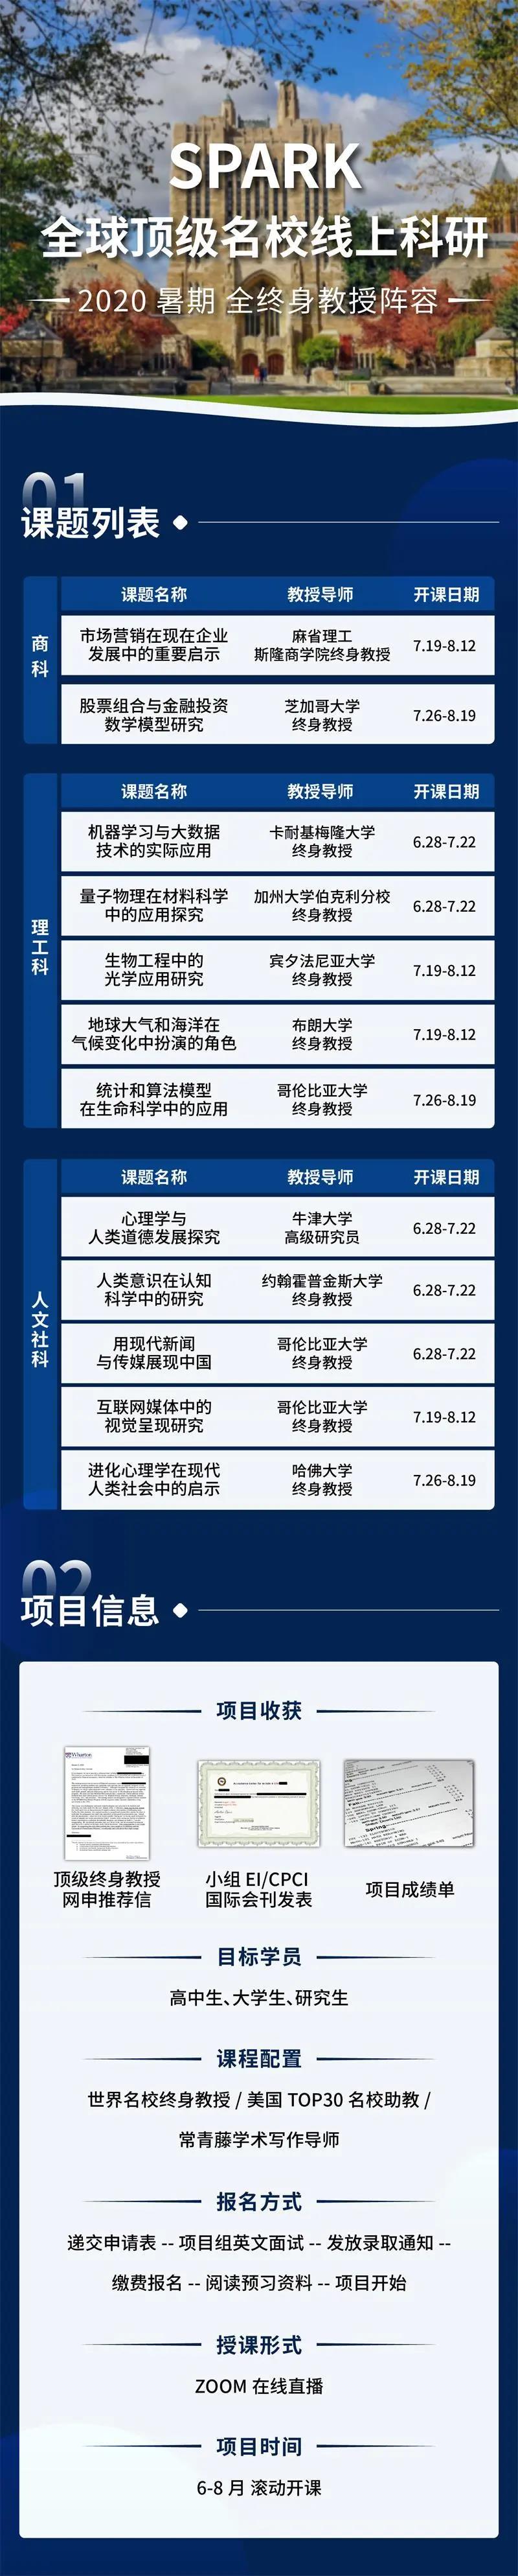 官方消息：6月16日起美暂停往返中国民航航班